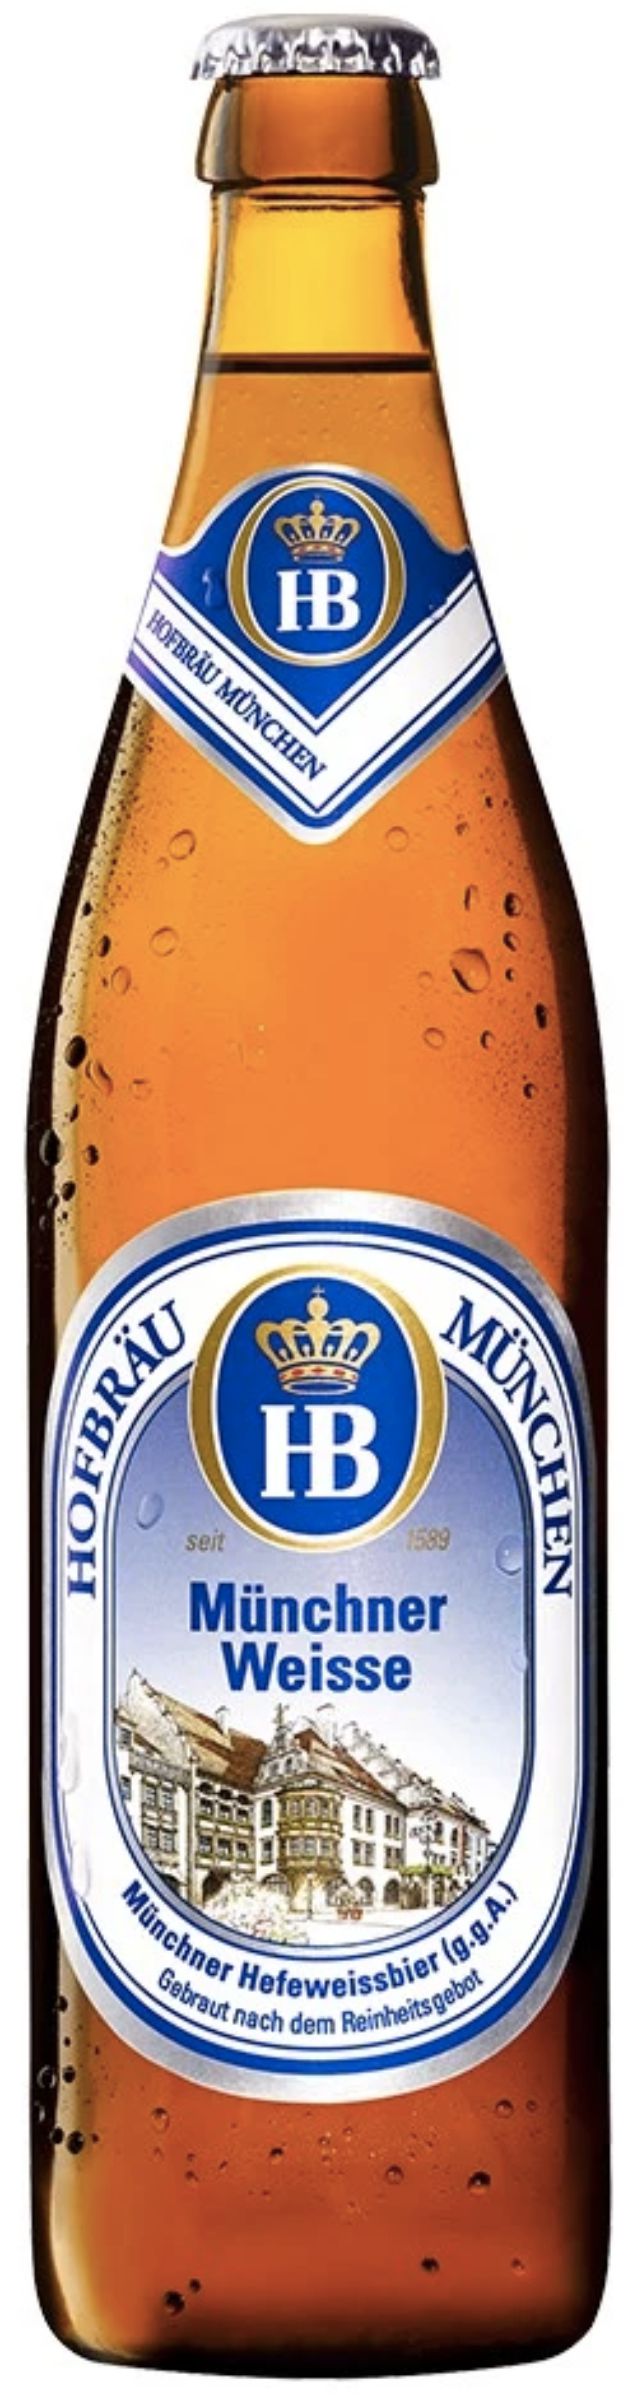 Пиво Хофброй Мюнхен Вайс, светлое пшеничное, 0.5 л